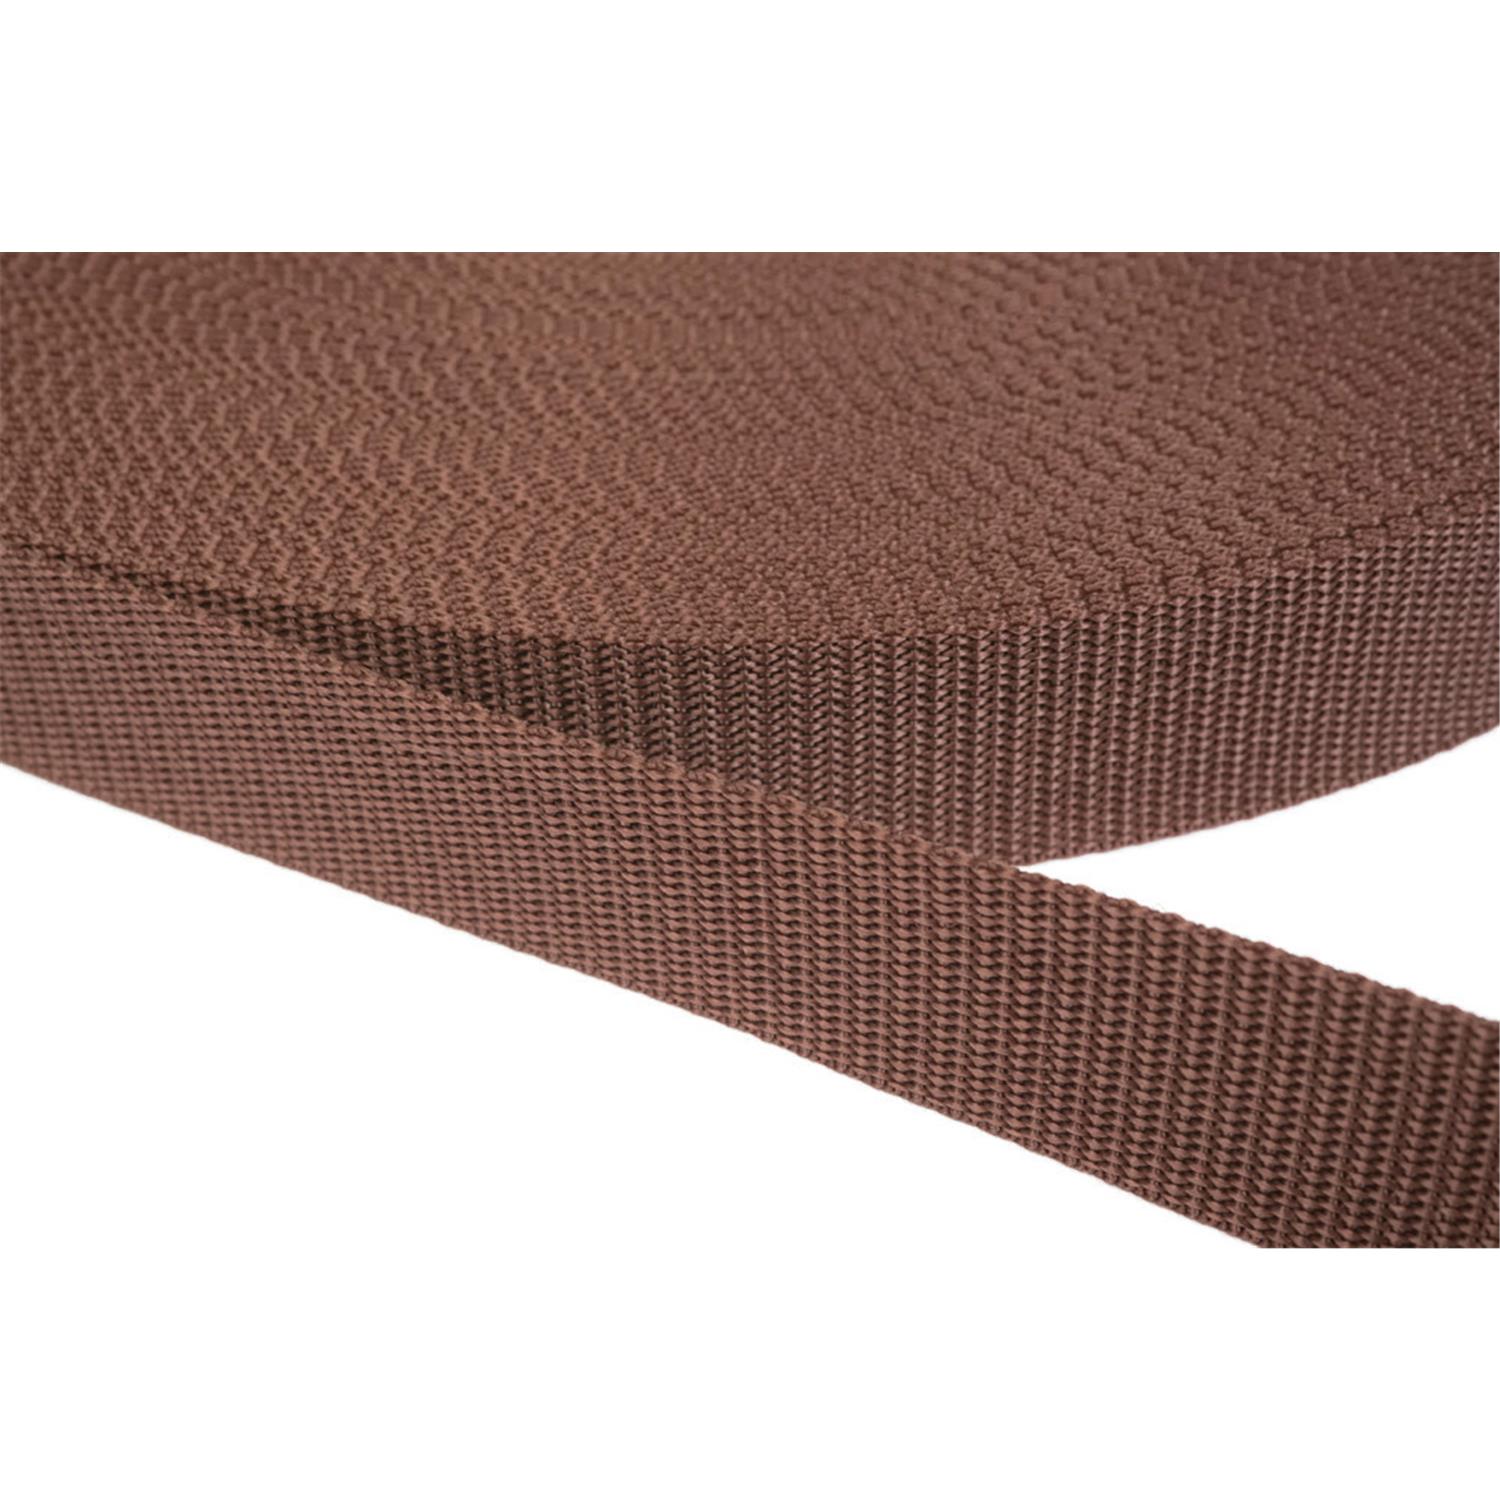 Gurtband 10mm breit aus Polypropylen in 41 Farben 07 - braun 50 Meter